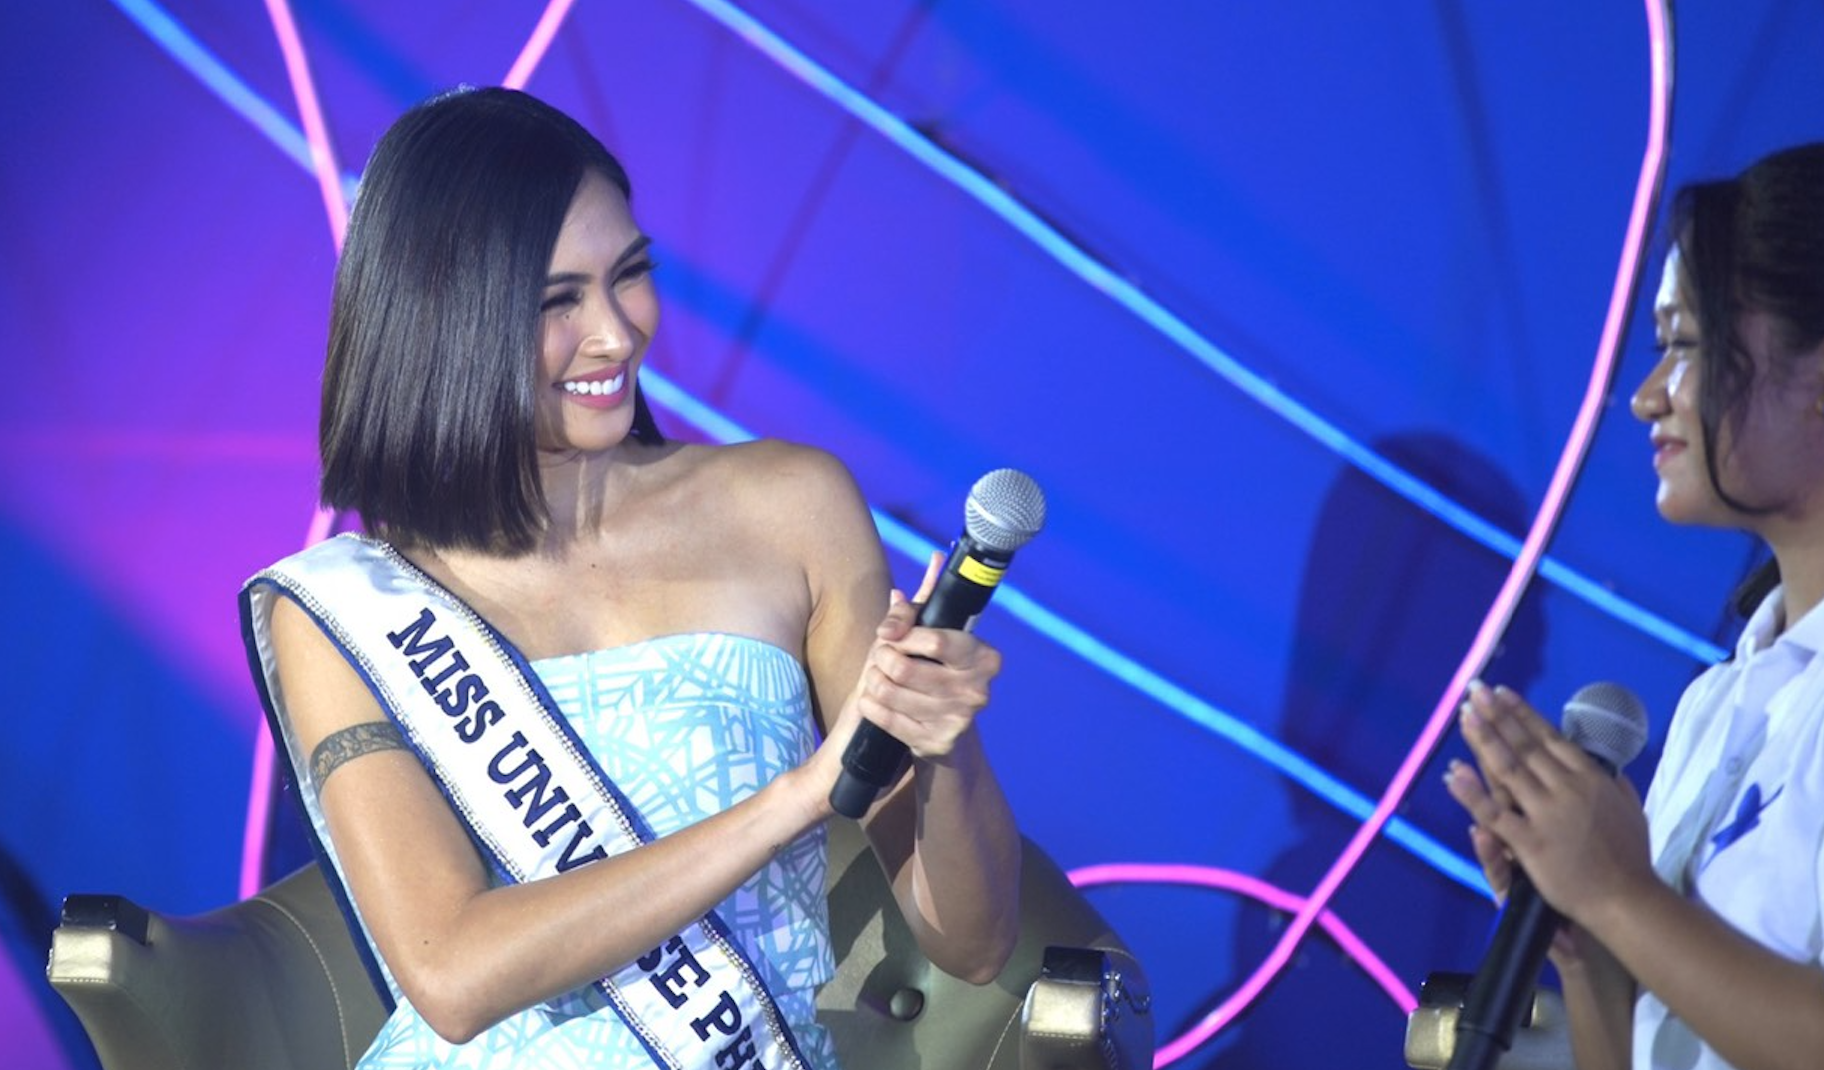 Miss Universe Philippines 2021 Bea Gomez